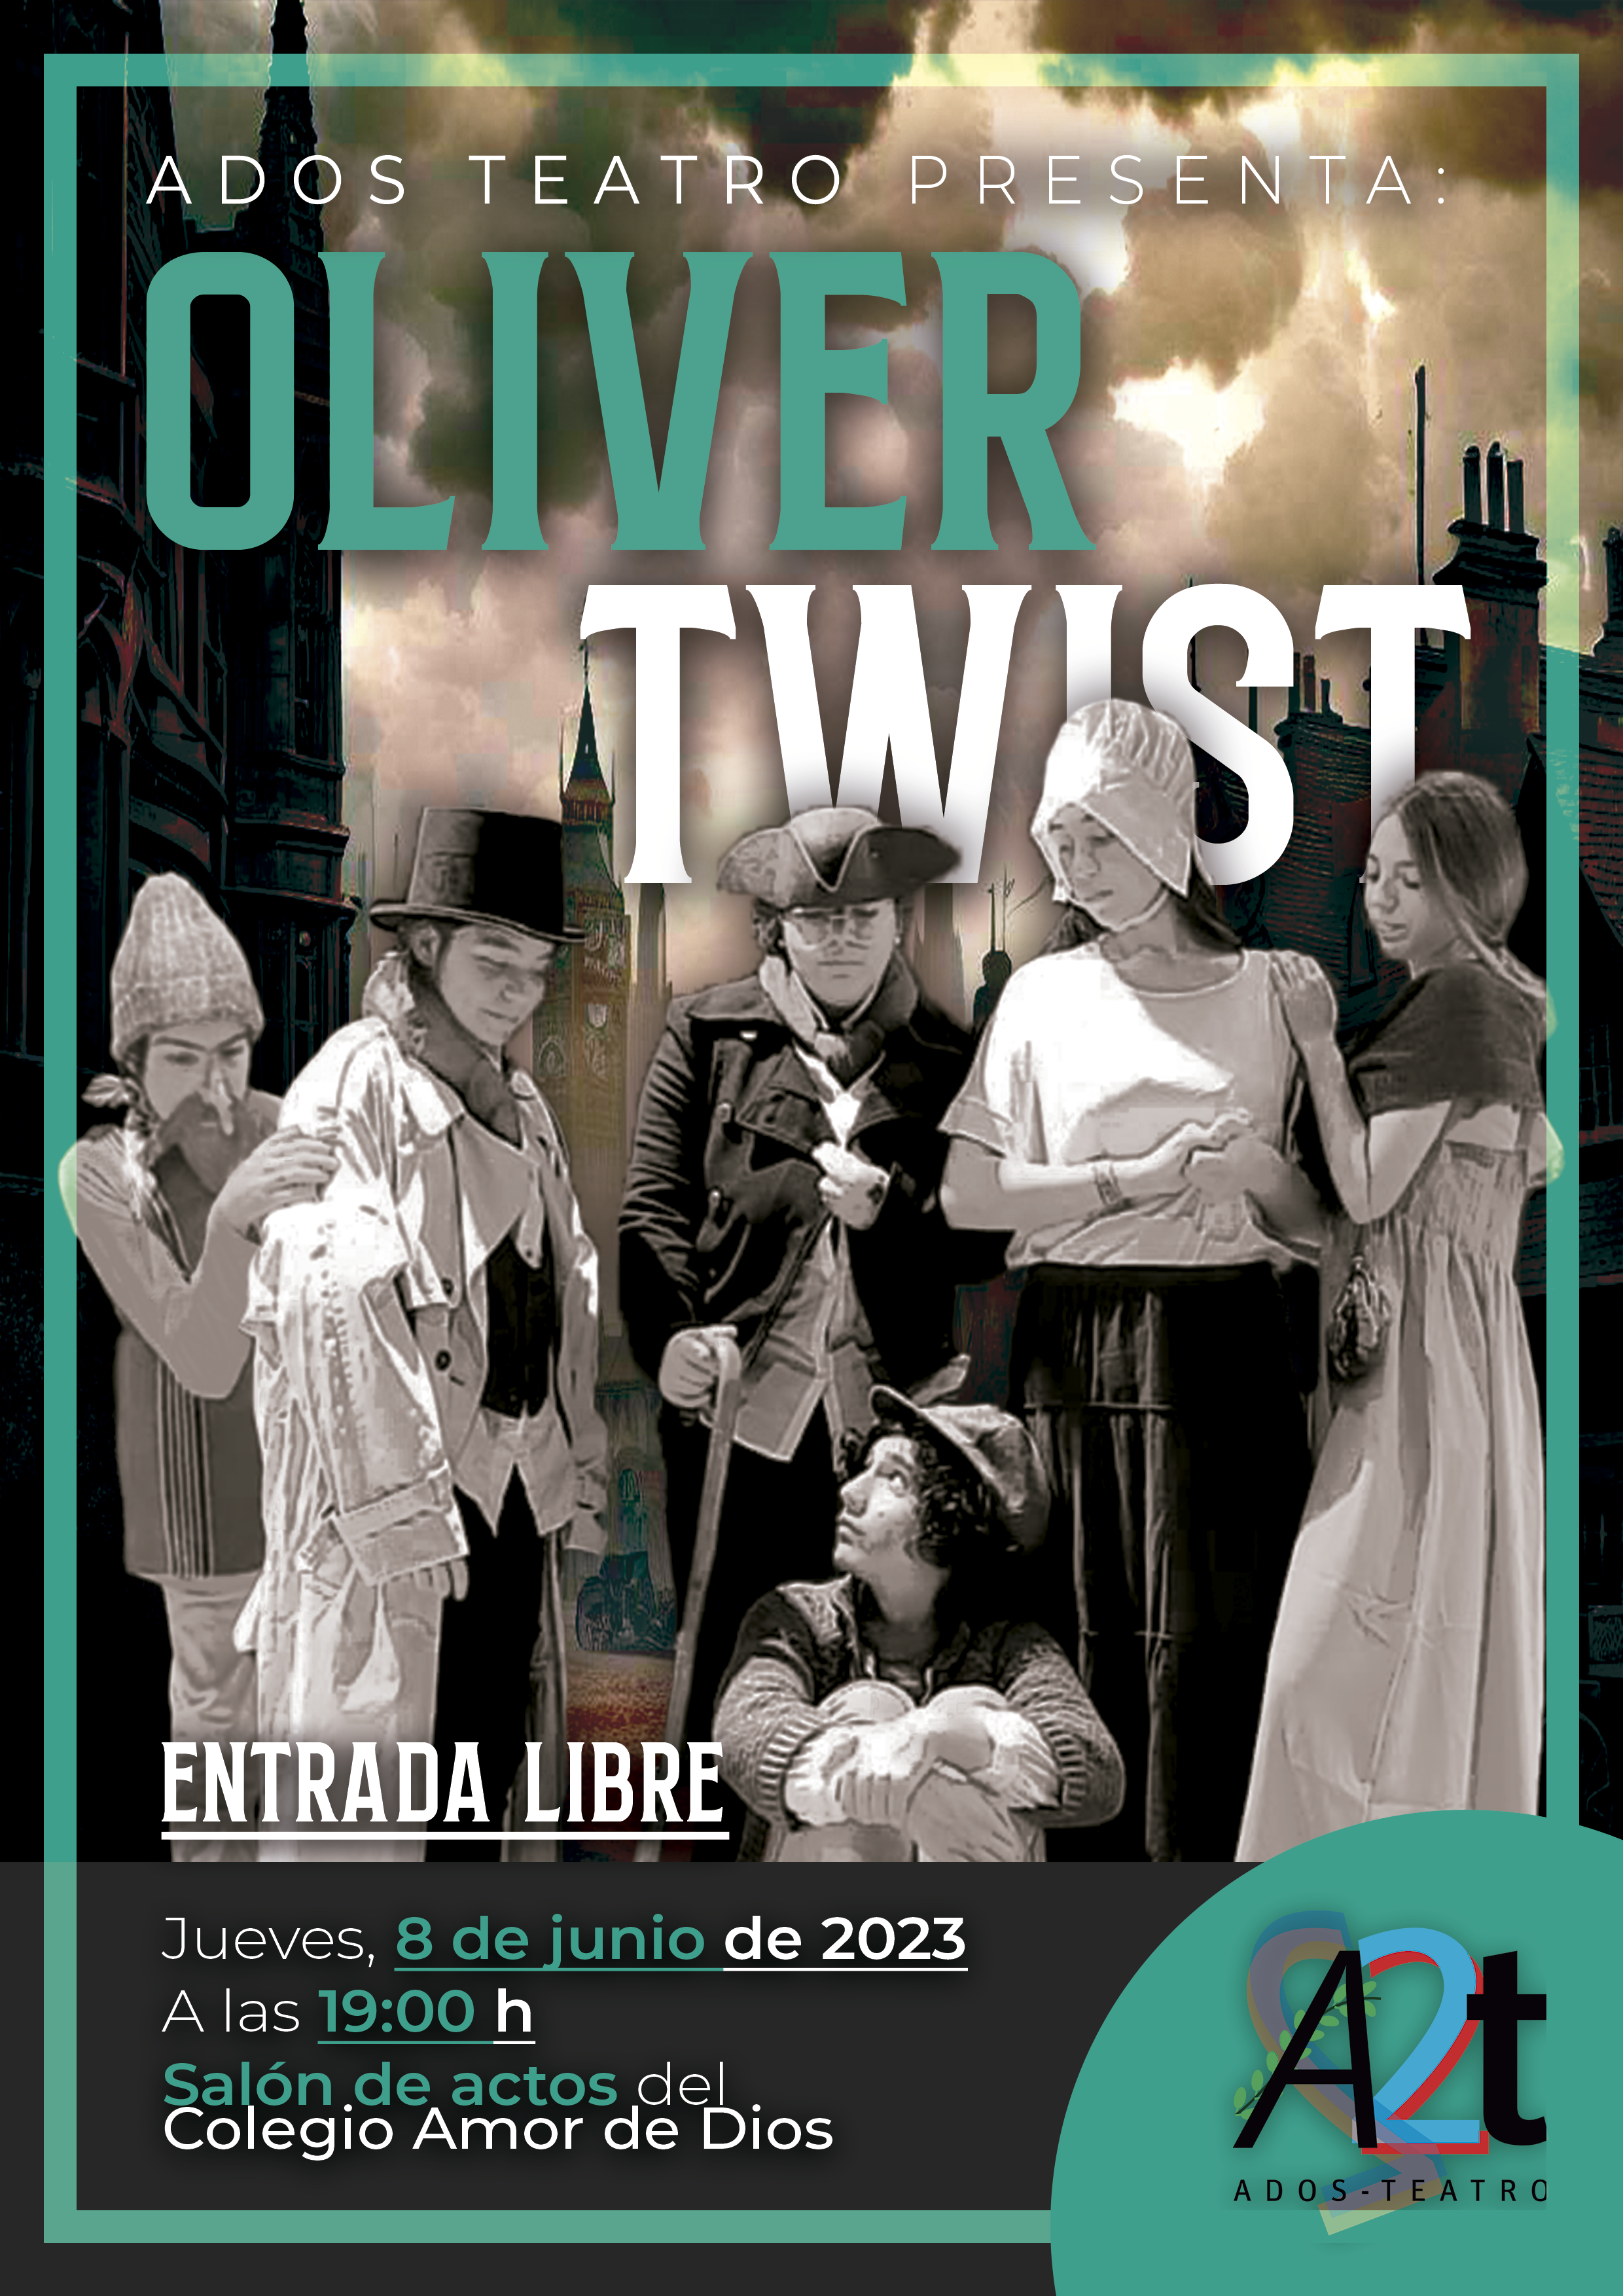 ADOS-TEATRO estrena su adaptación de Oliver Twist en nuestro Salón de Actos